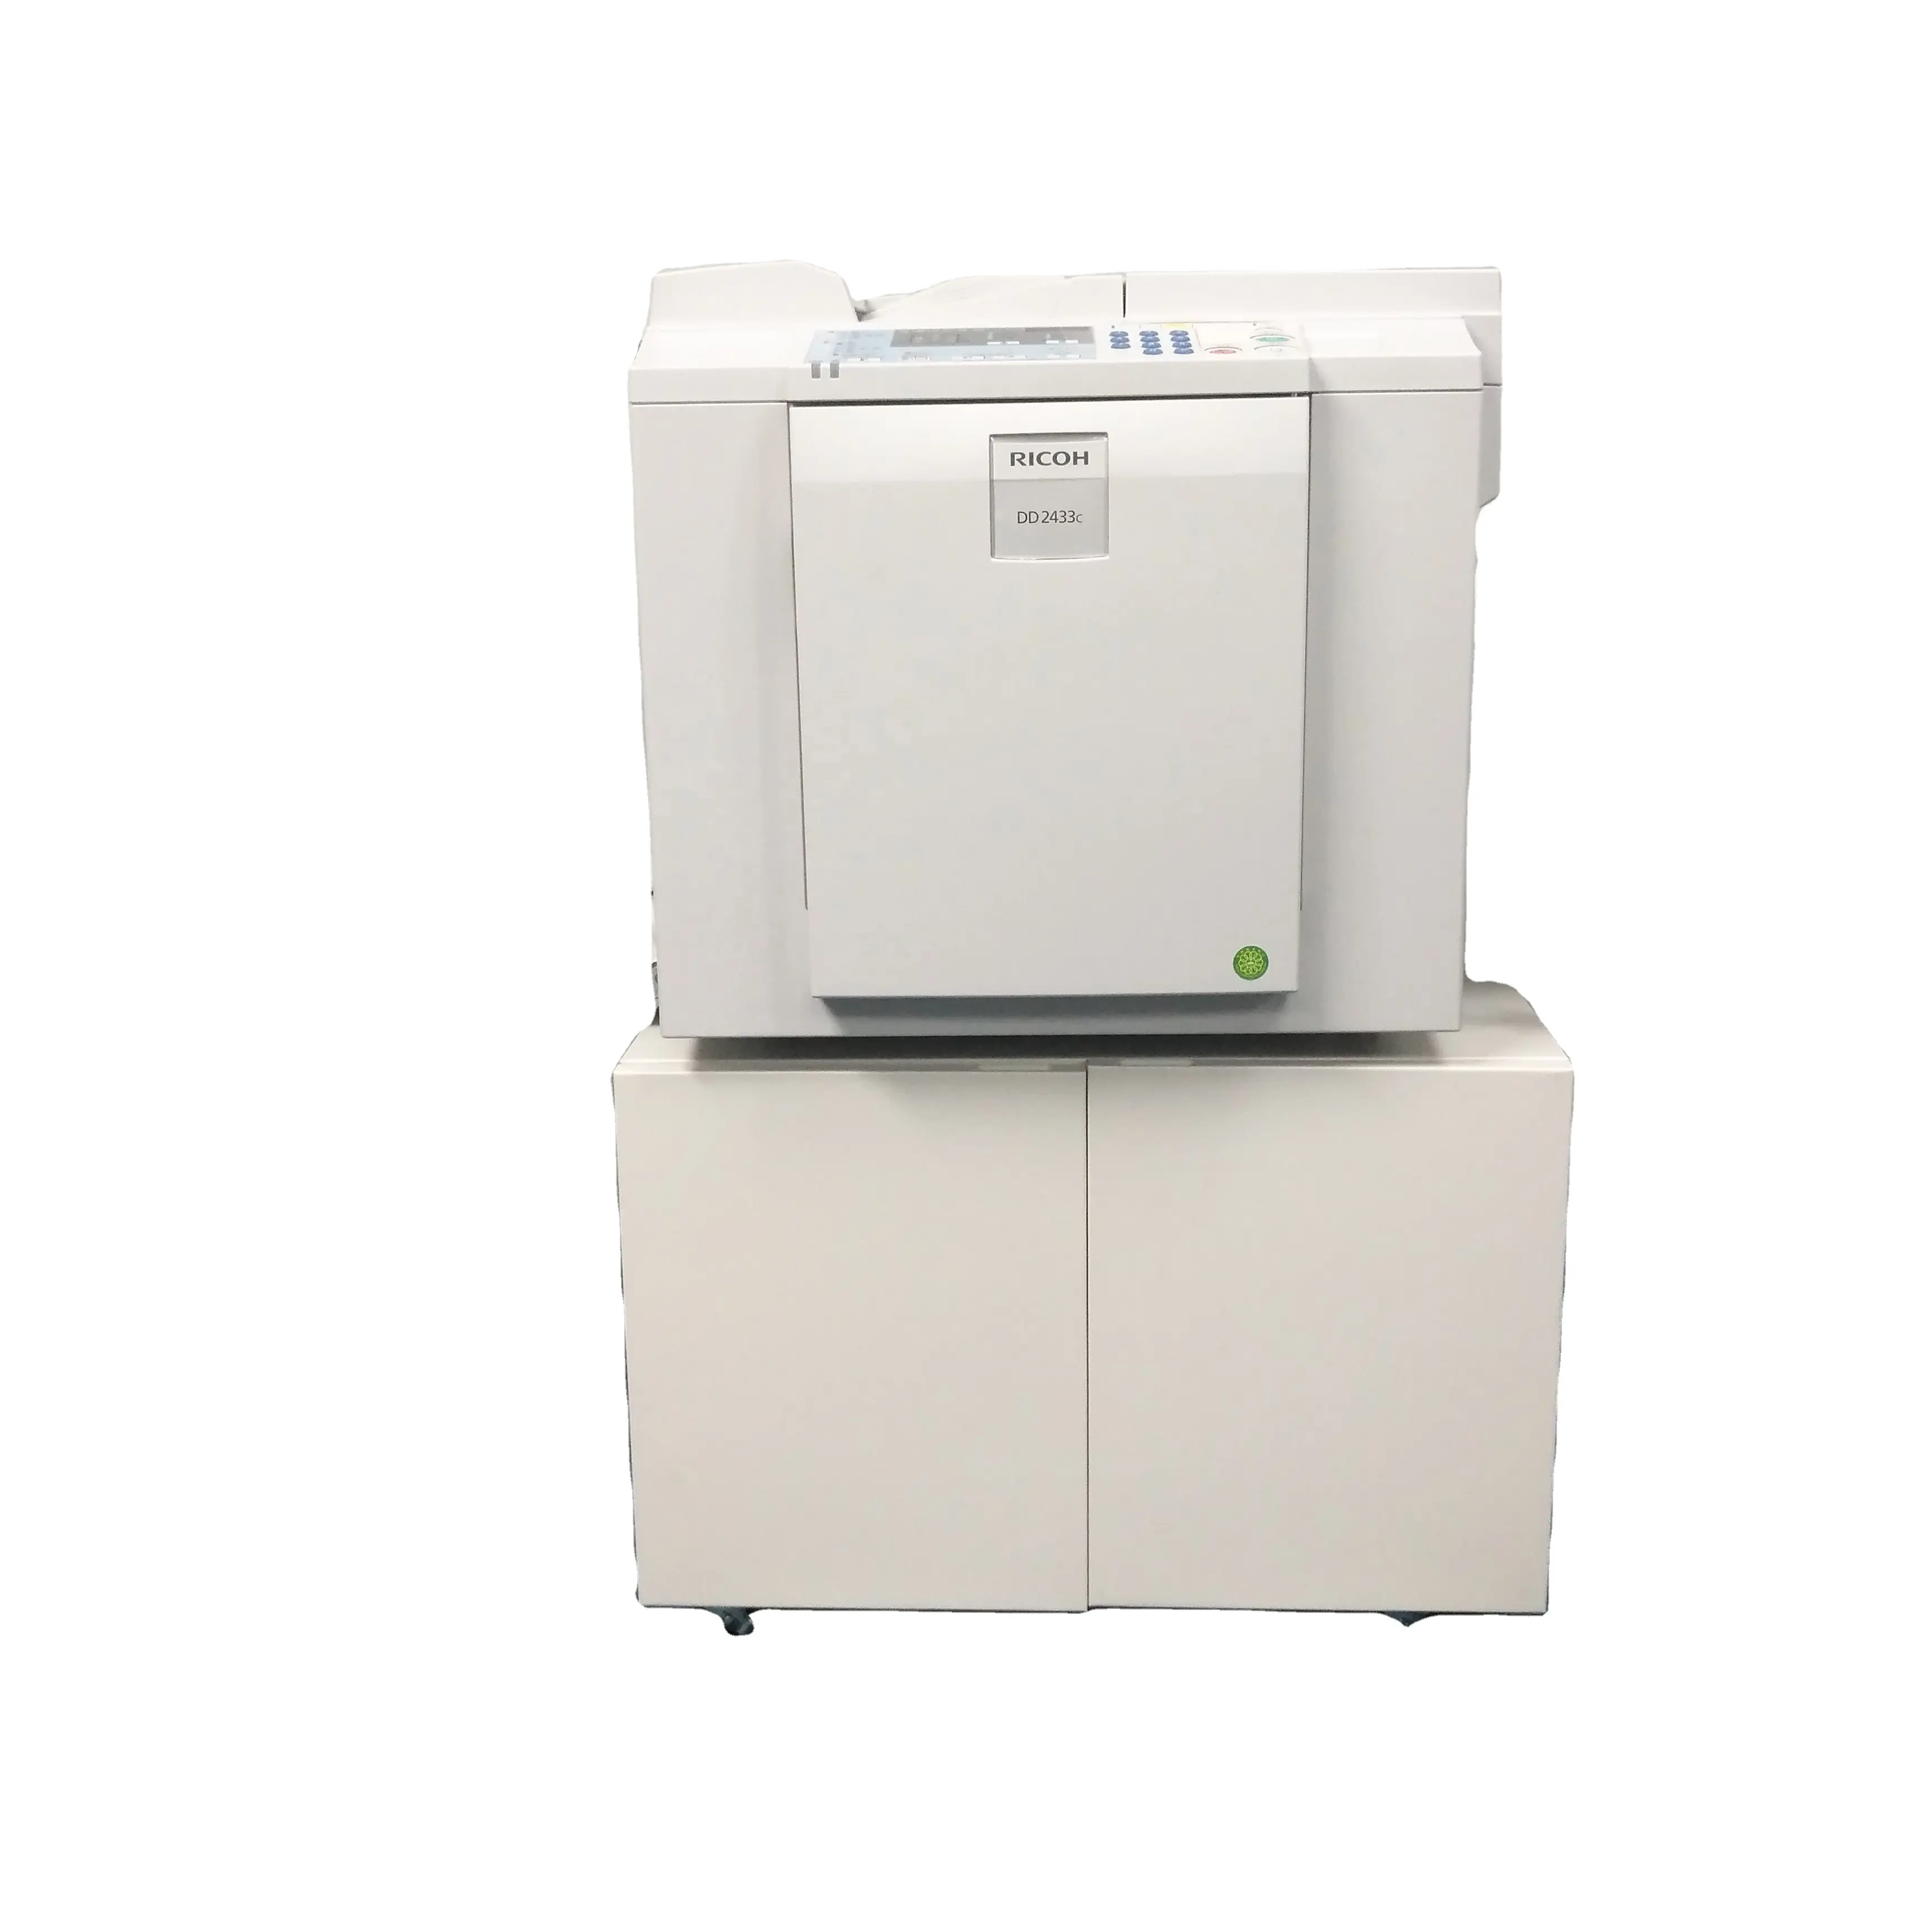 Impresora duplicadora digital CP6203C, máquina copiadora de escáner para Gestetner y ricoh